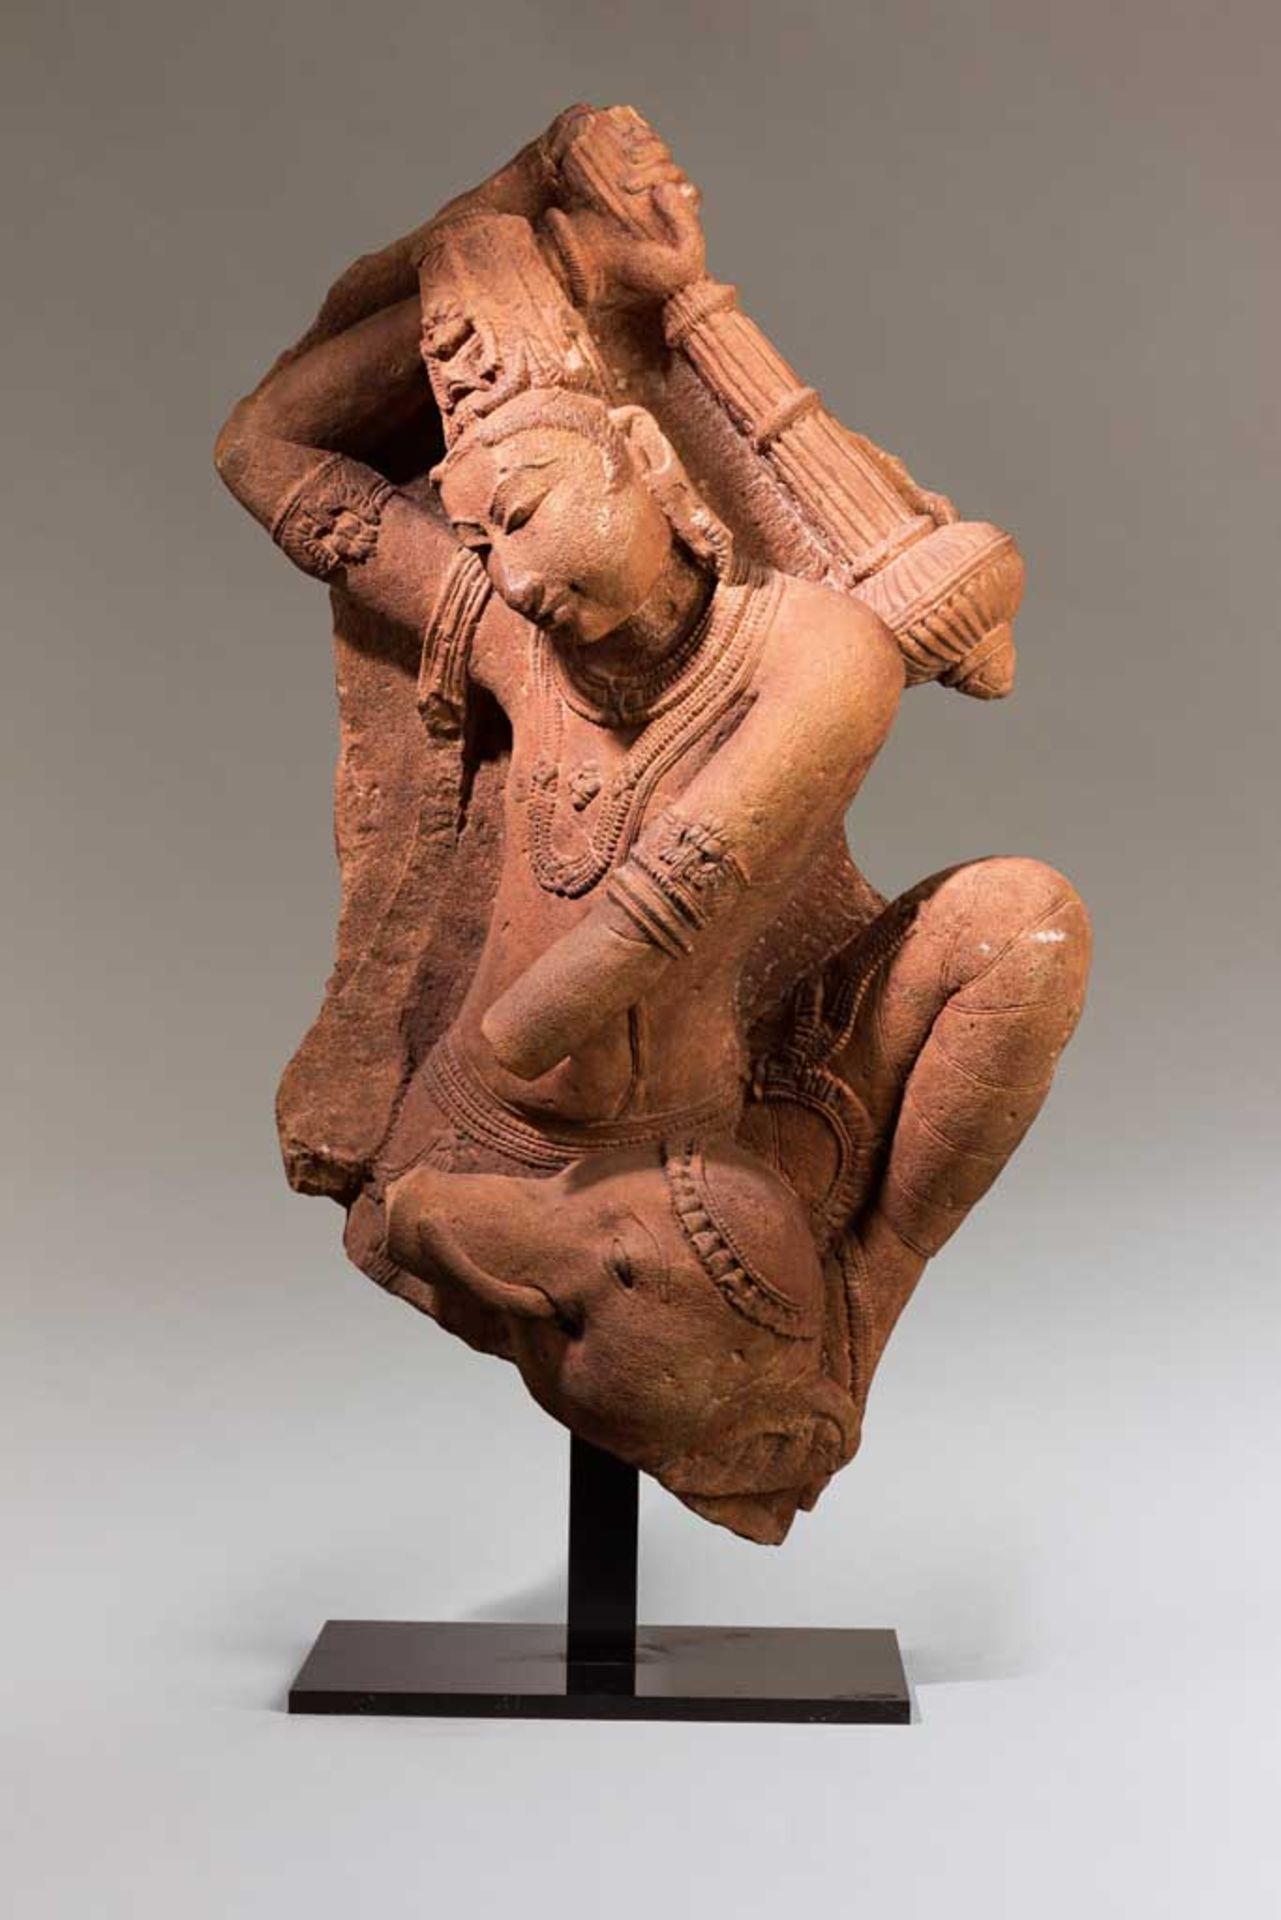 Shiva oder Vishnu. Fragment einer großen Skulptur. In der erhobenen Rechten den Streitkolben